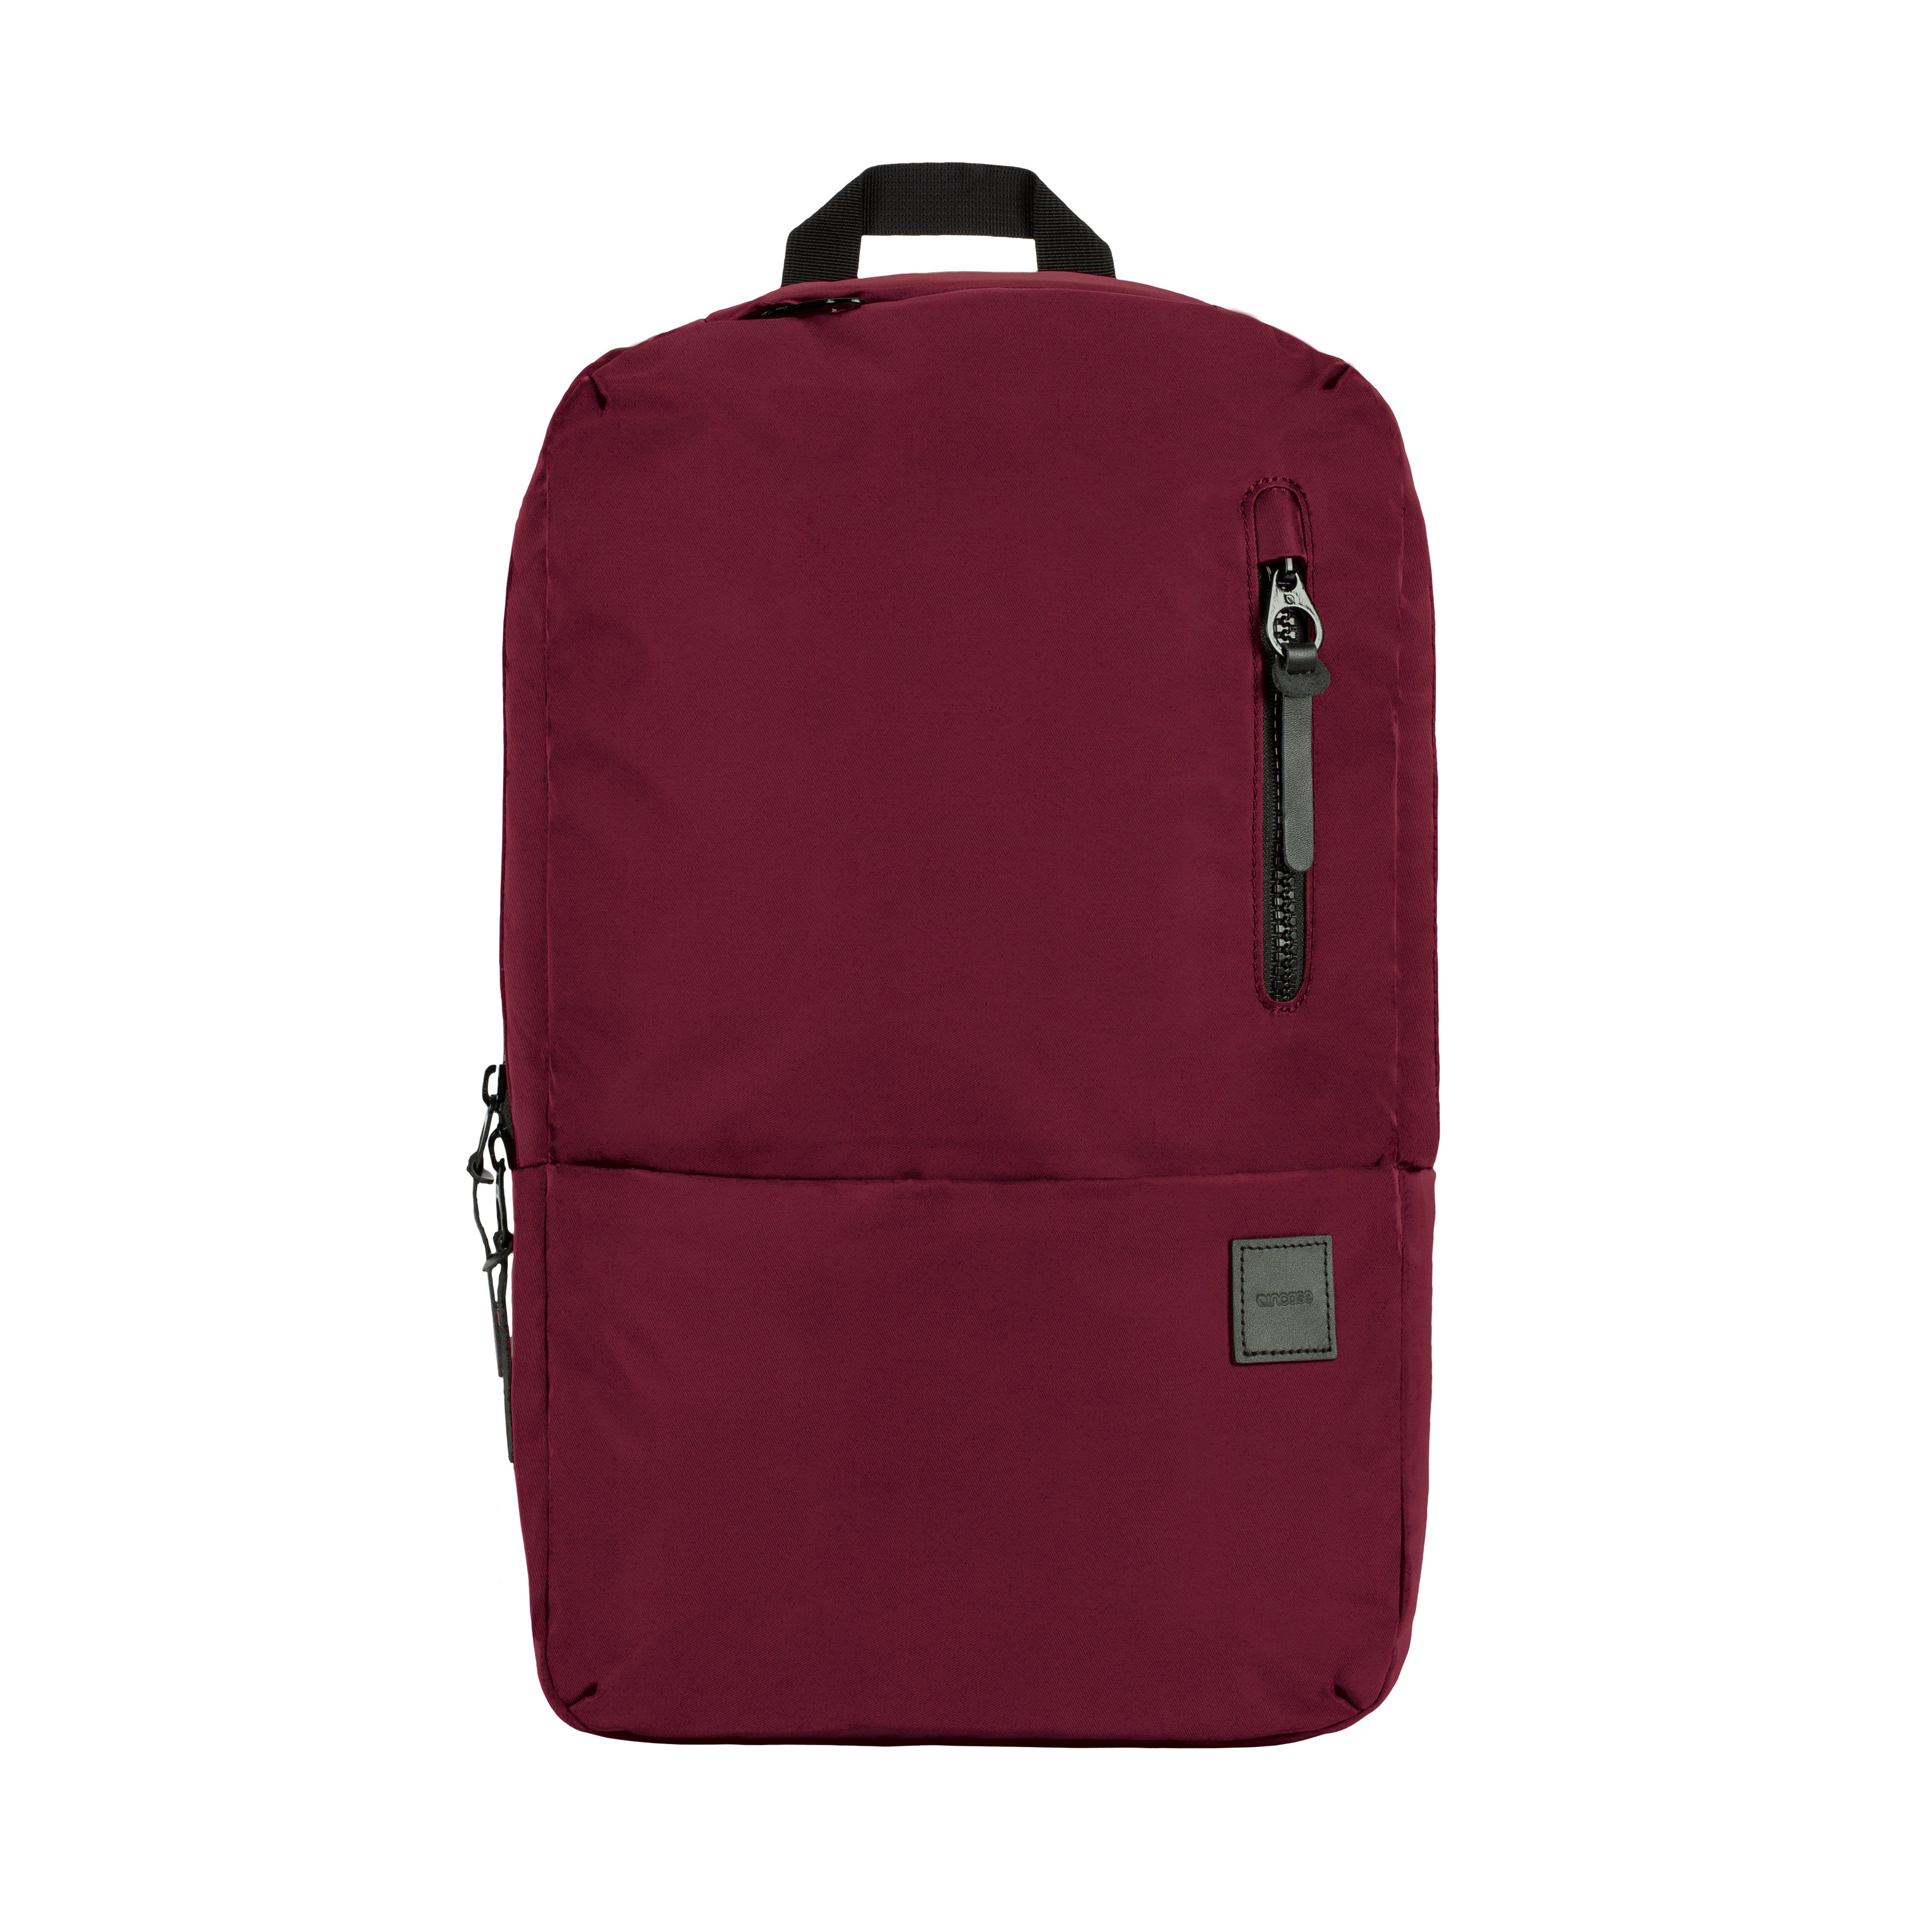 フライトナイロン素材コンパスバックパック(Compass Backpack With Flight Nylon) 黒(ブラック)  Incase（インケース）公式通販 – Incase(インケース) 公式通販